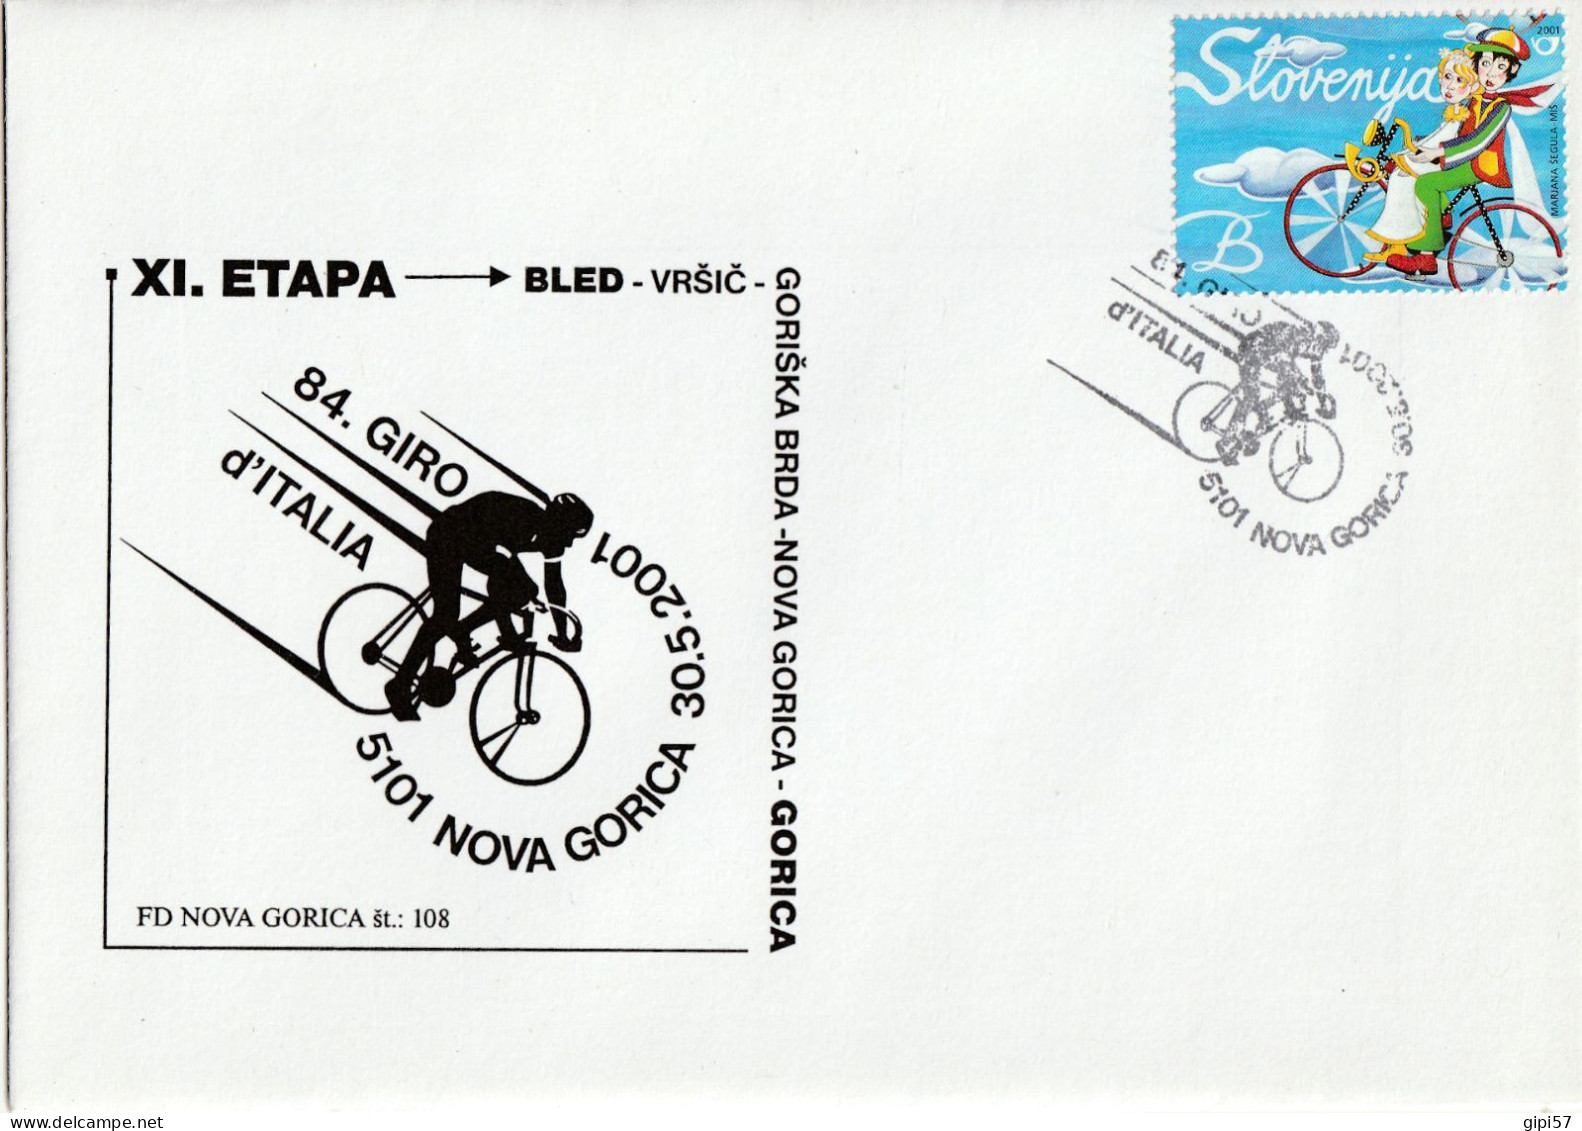 CICLISMO 84. GIRO D'ITALIA 2001 - TAPPA BLED GORIZIA. SLOVENIA. ANNULLO SPECIALE NOVA GORICA SU BUSTA DEDICATA - Cycling